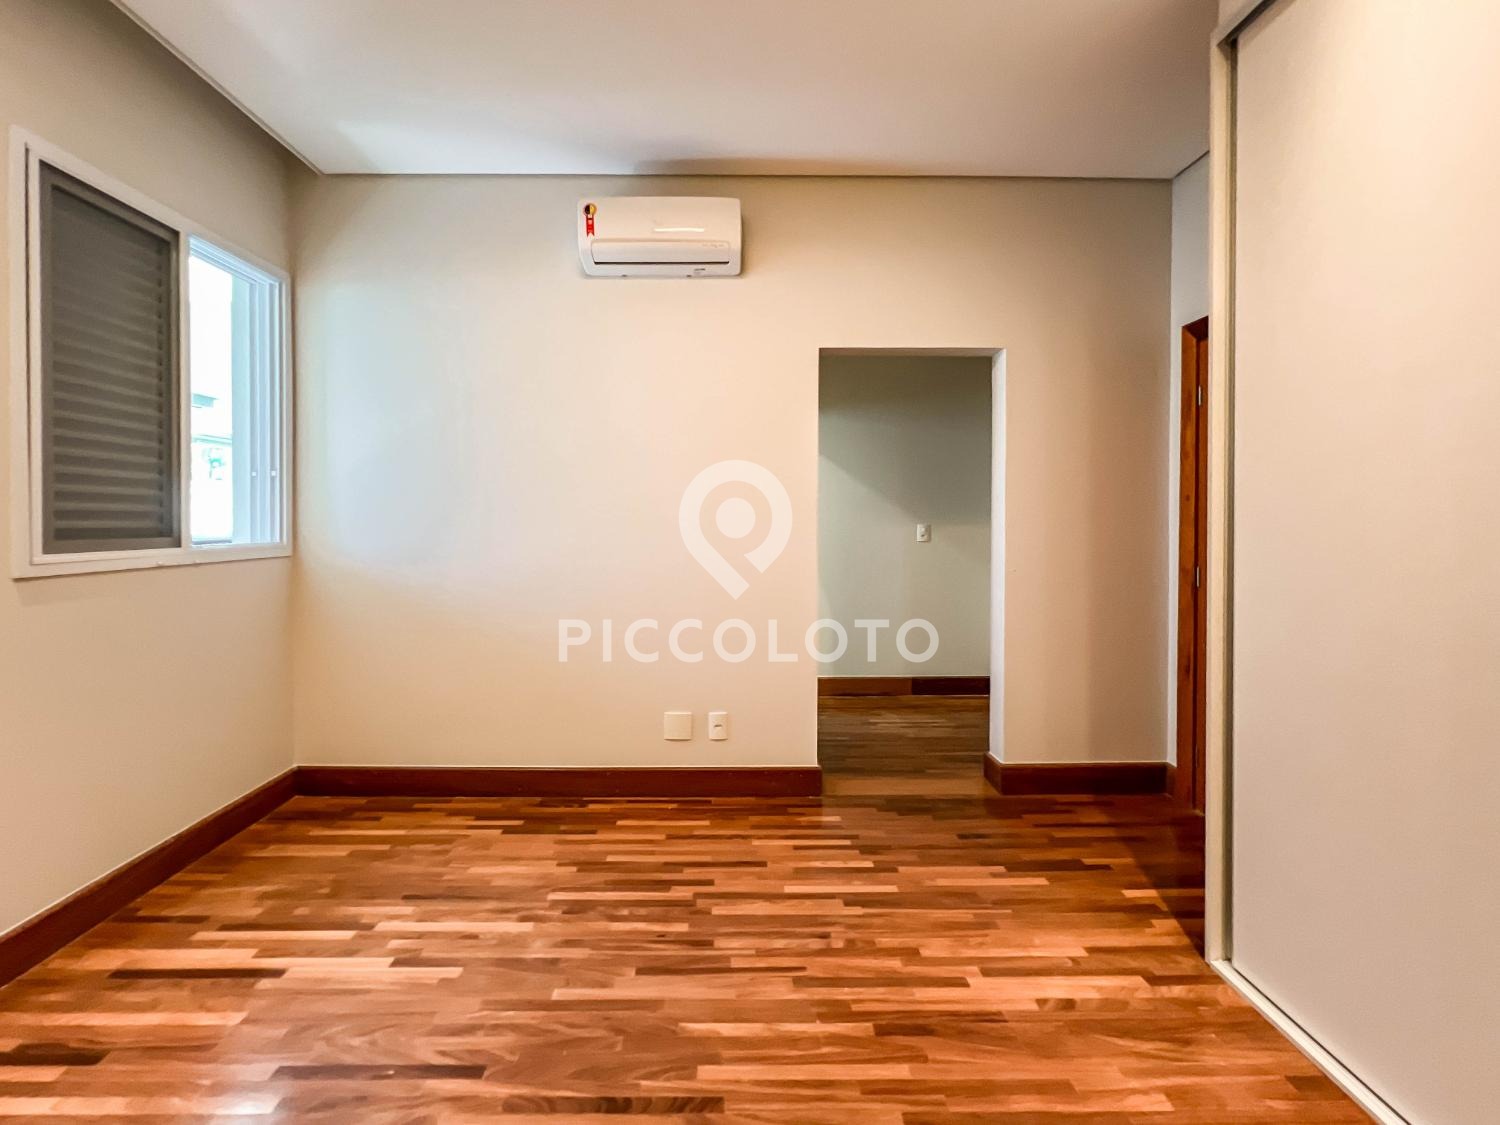 Piccoloto -Casa à venda no Alphaville Dom Pedro em Campinas